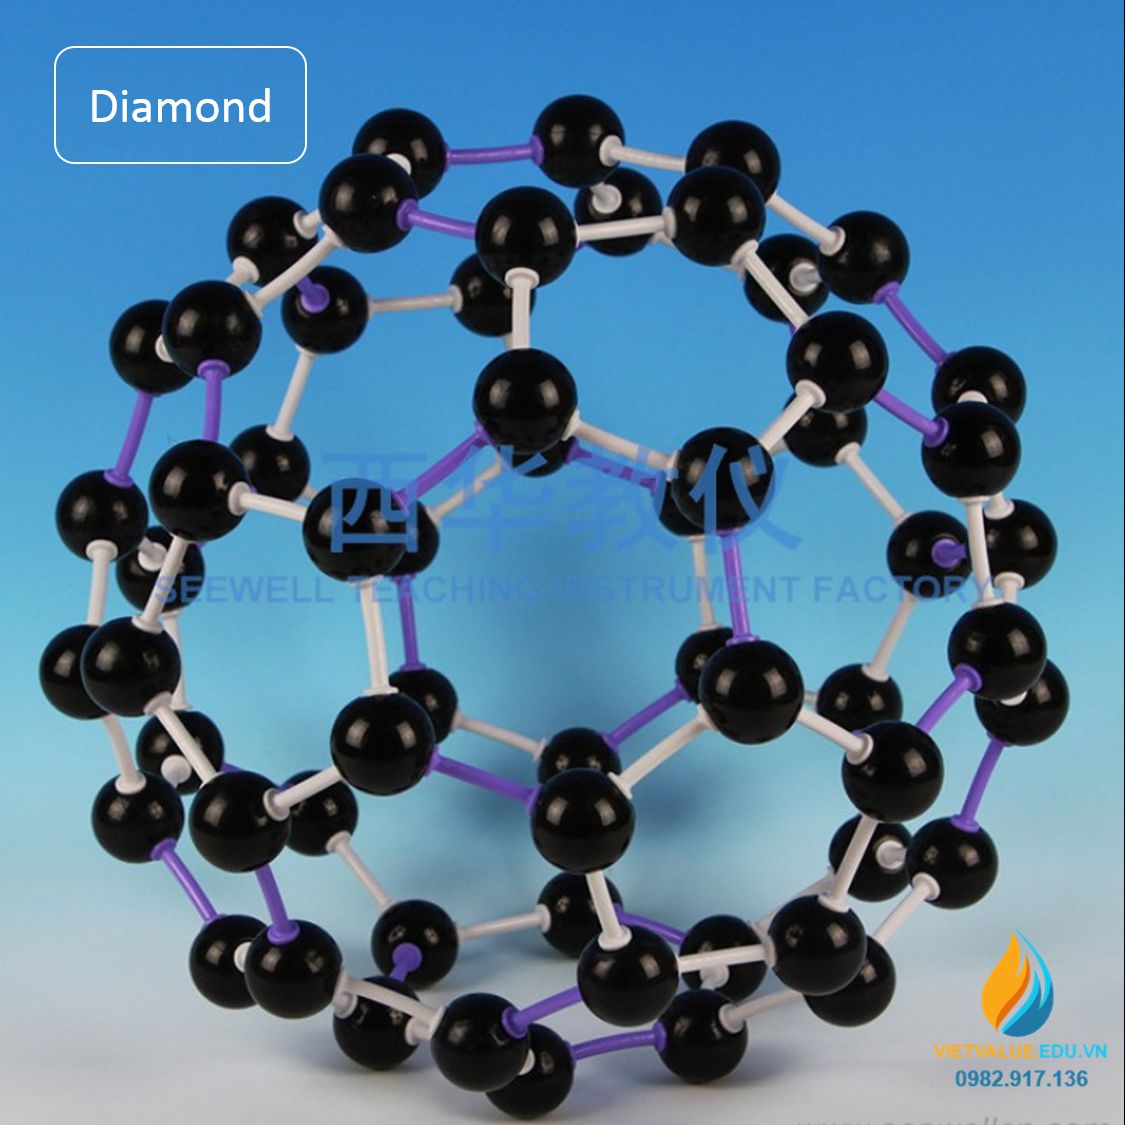 Mô hình Diamond, mô hình kim cương, mô hình phân tử hóa học VIETVALUE